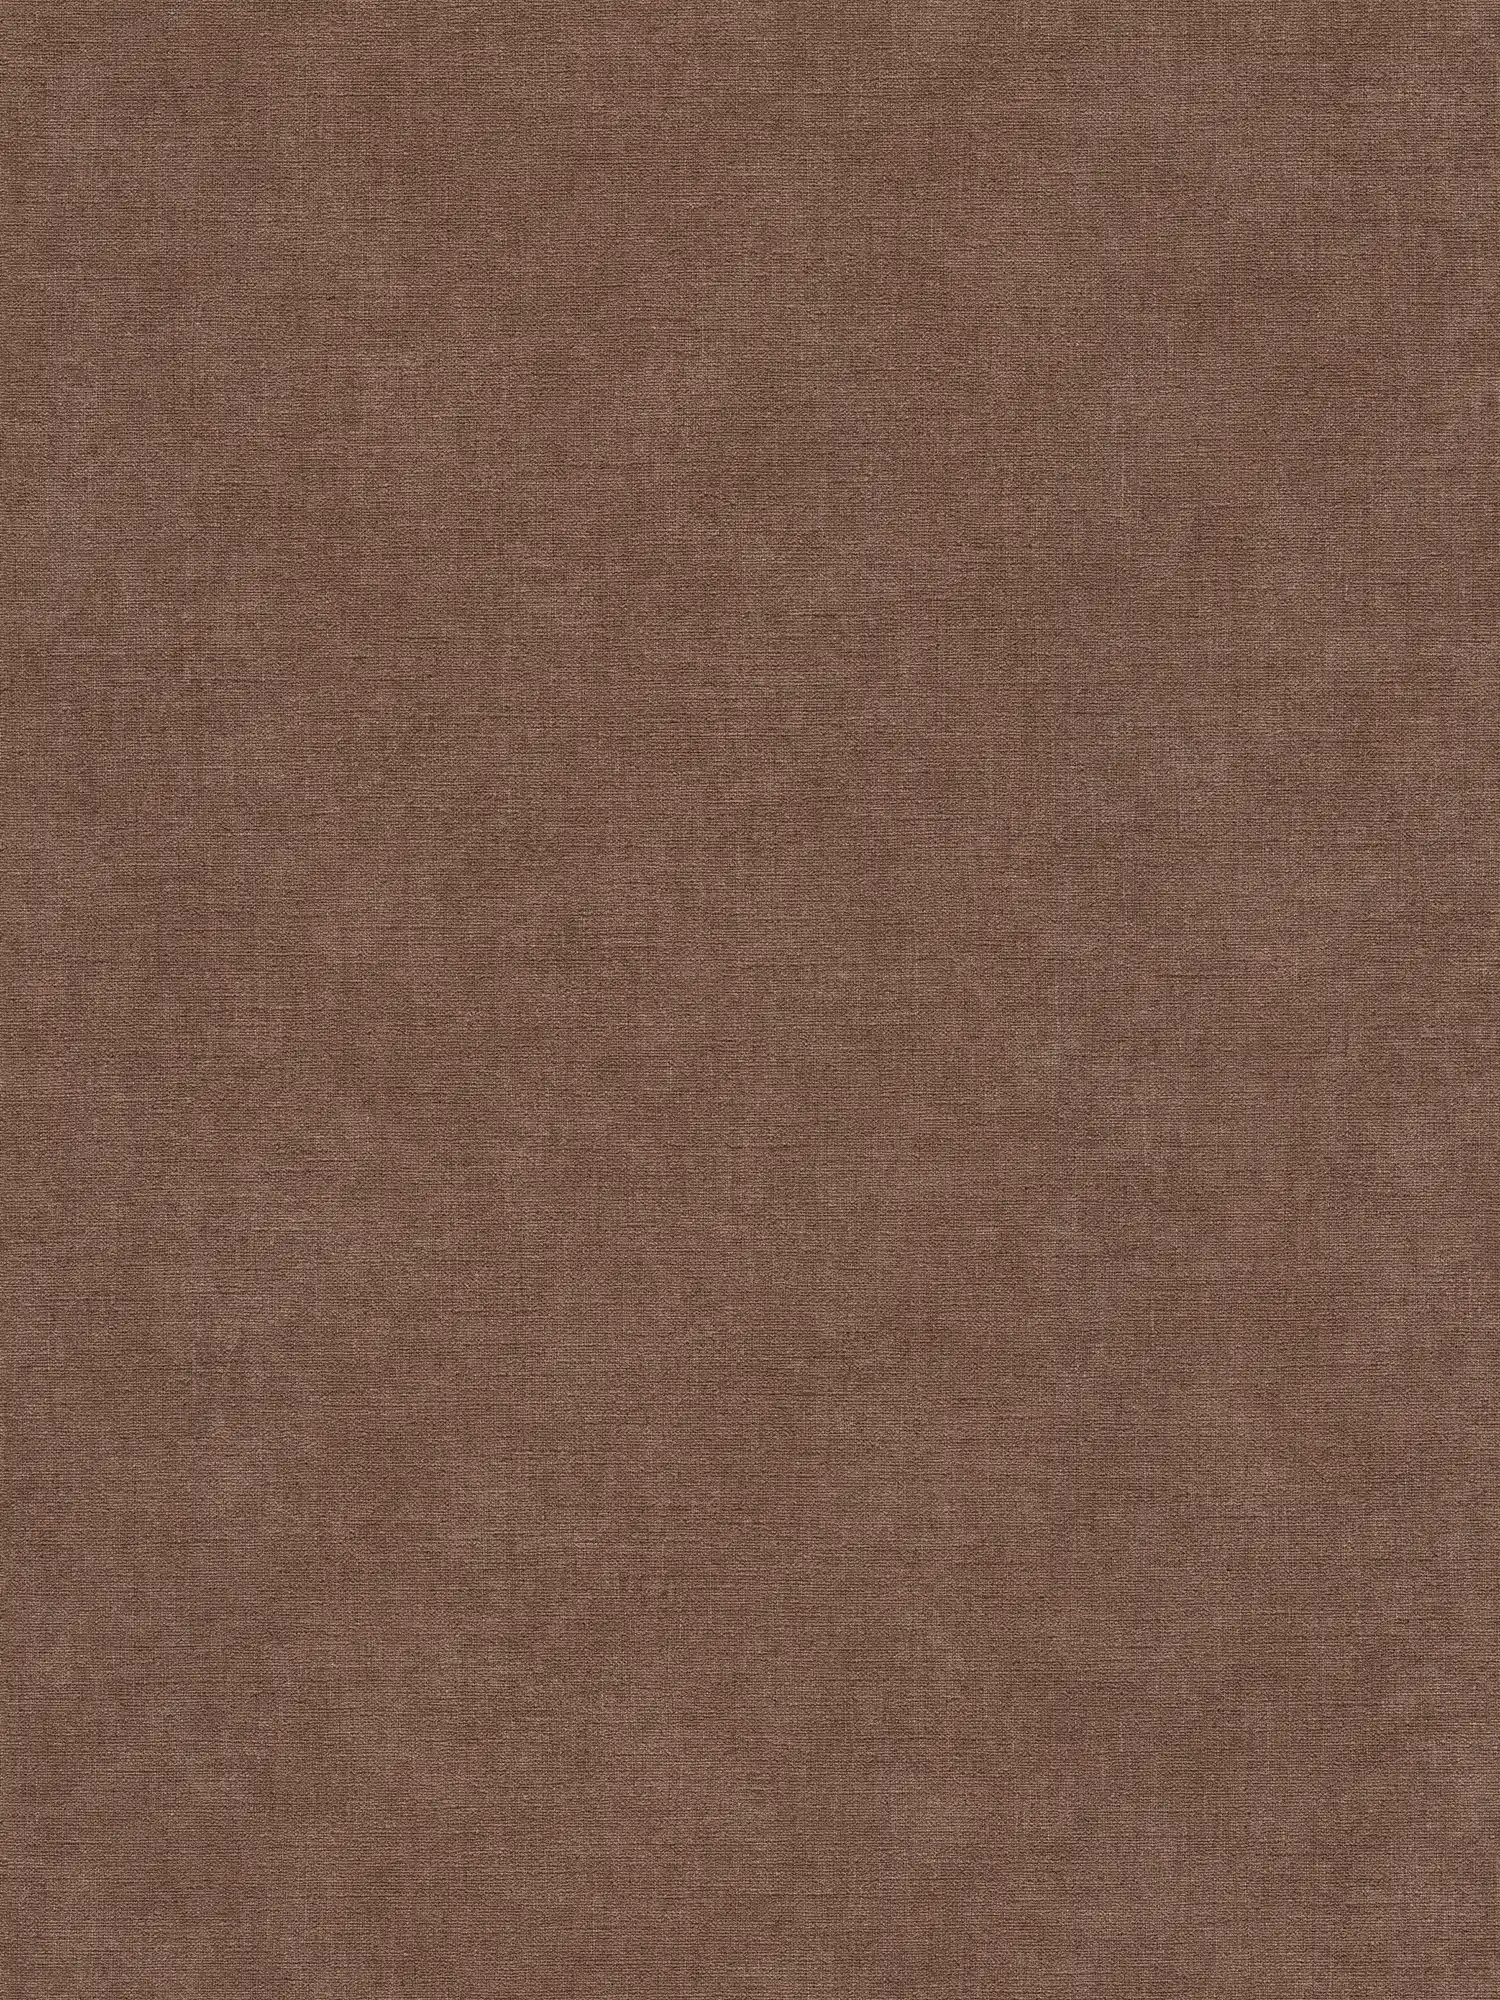 papier peint en papier intissé uni à texture légère - marron, rouge
